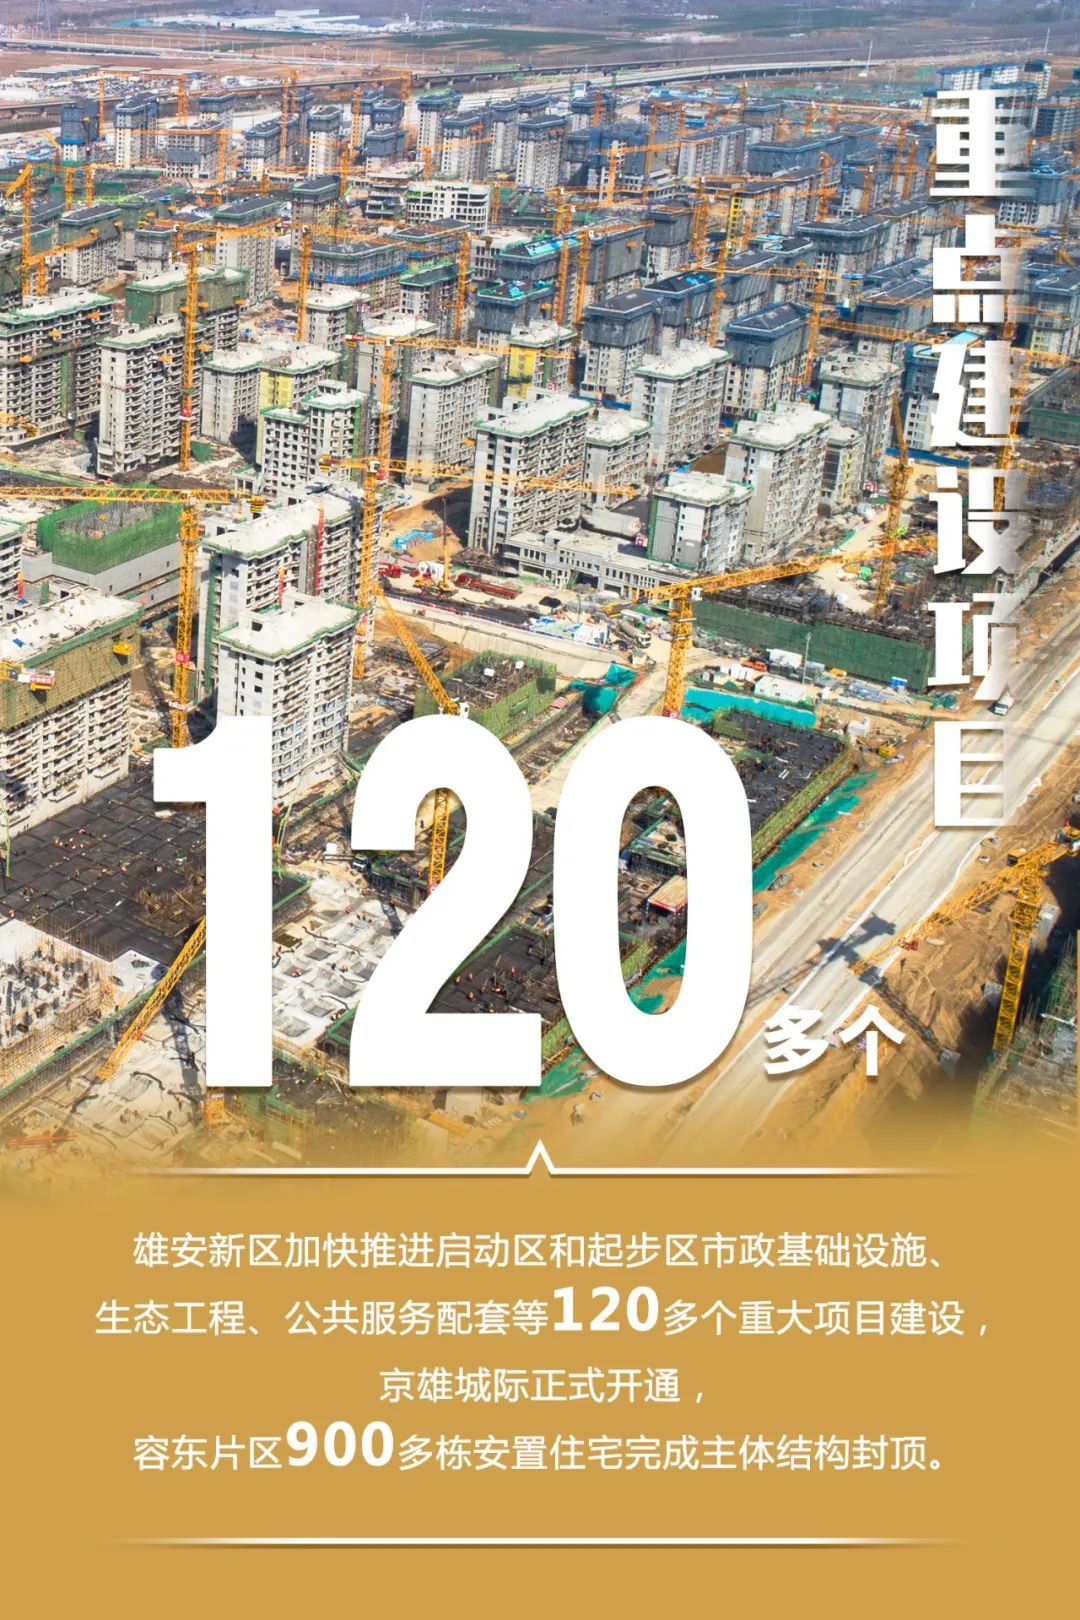 中国雄安                      雄安新区设立4年来 重点建设项目加快